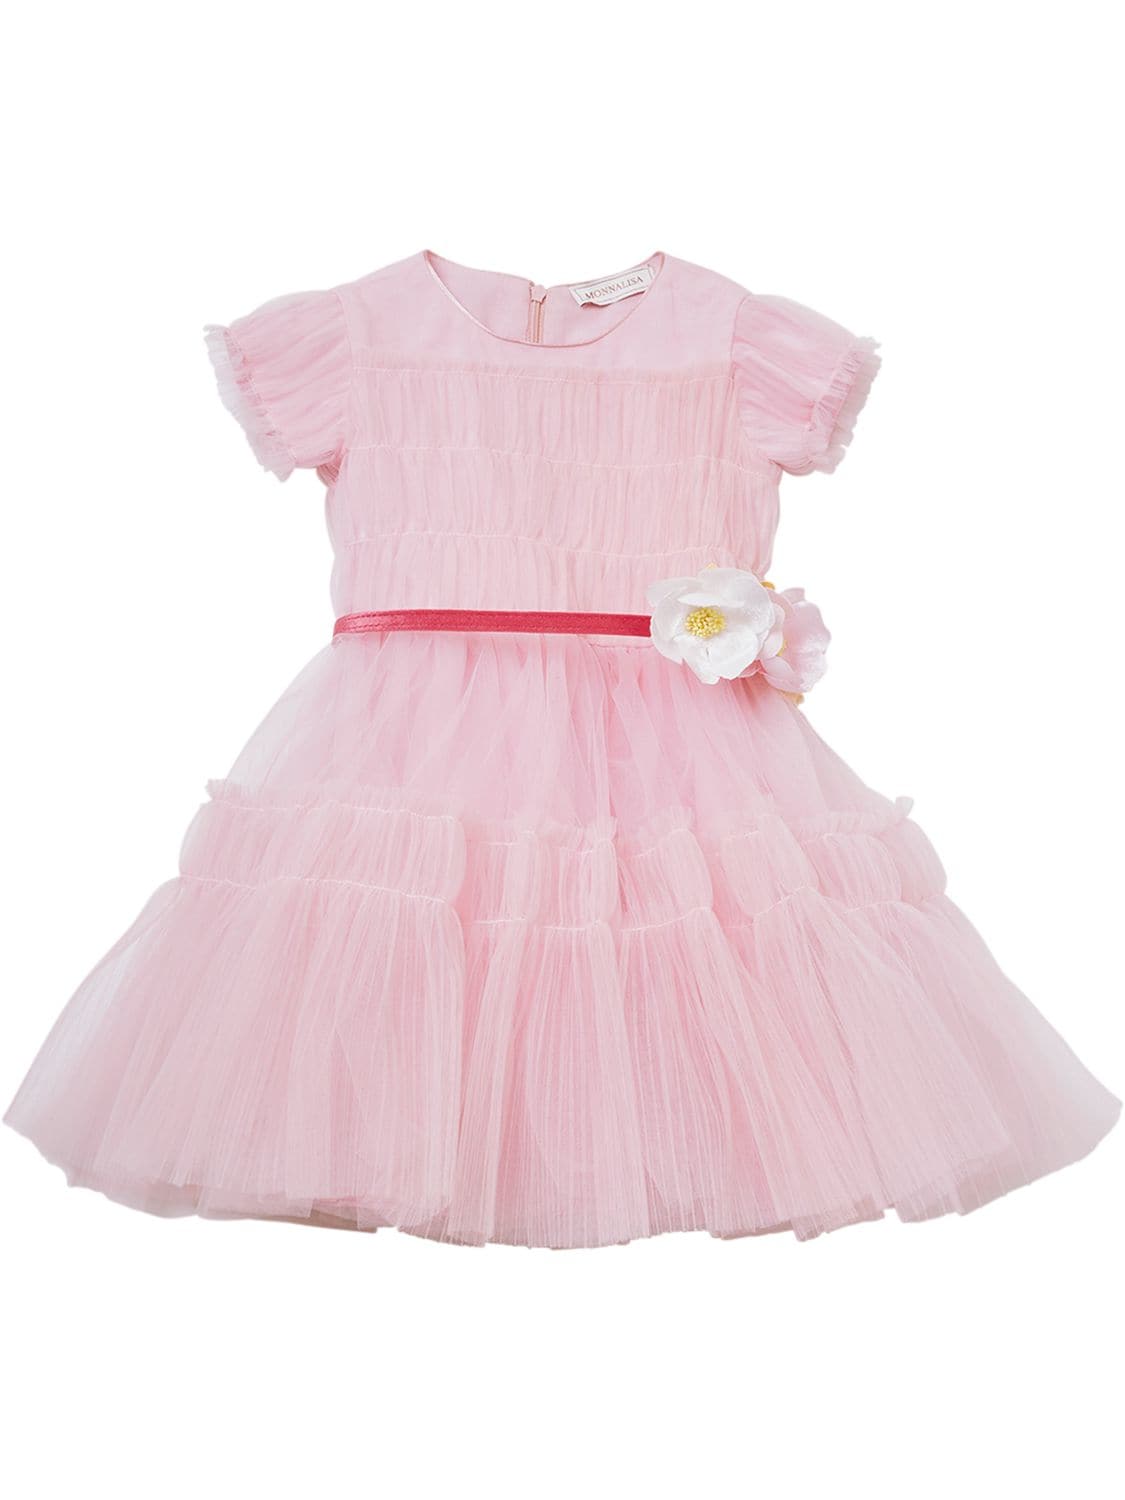 Monnalisa Kids' Tiered Tulle Dress W/ Flower Belt In Pink